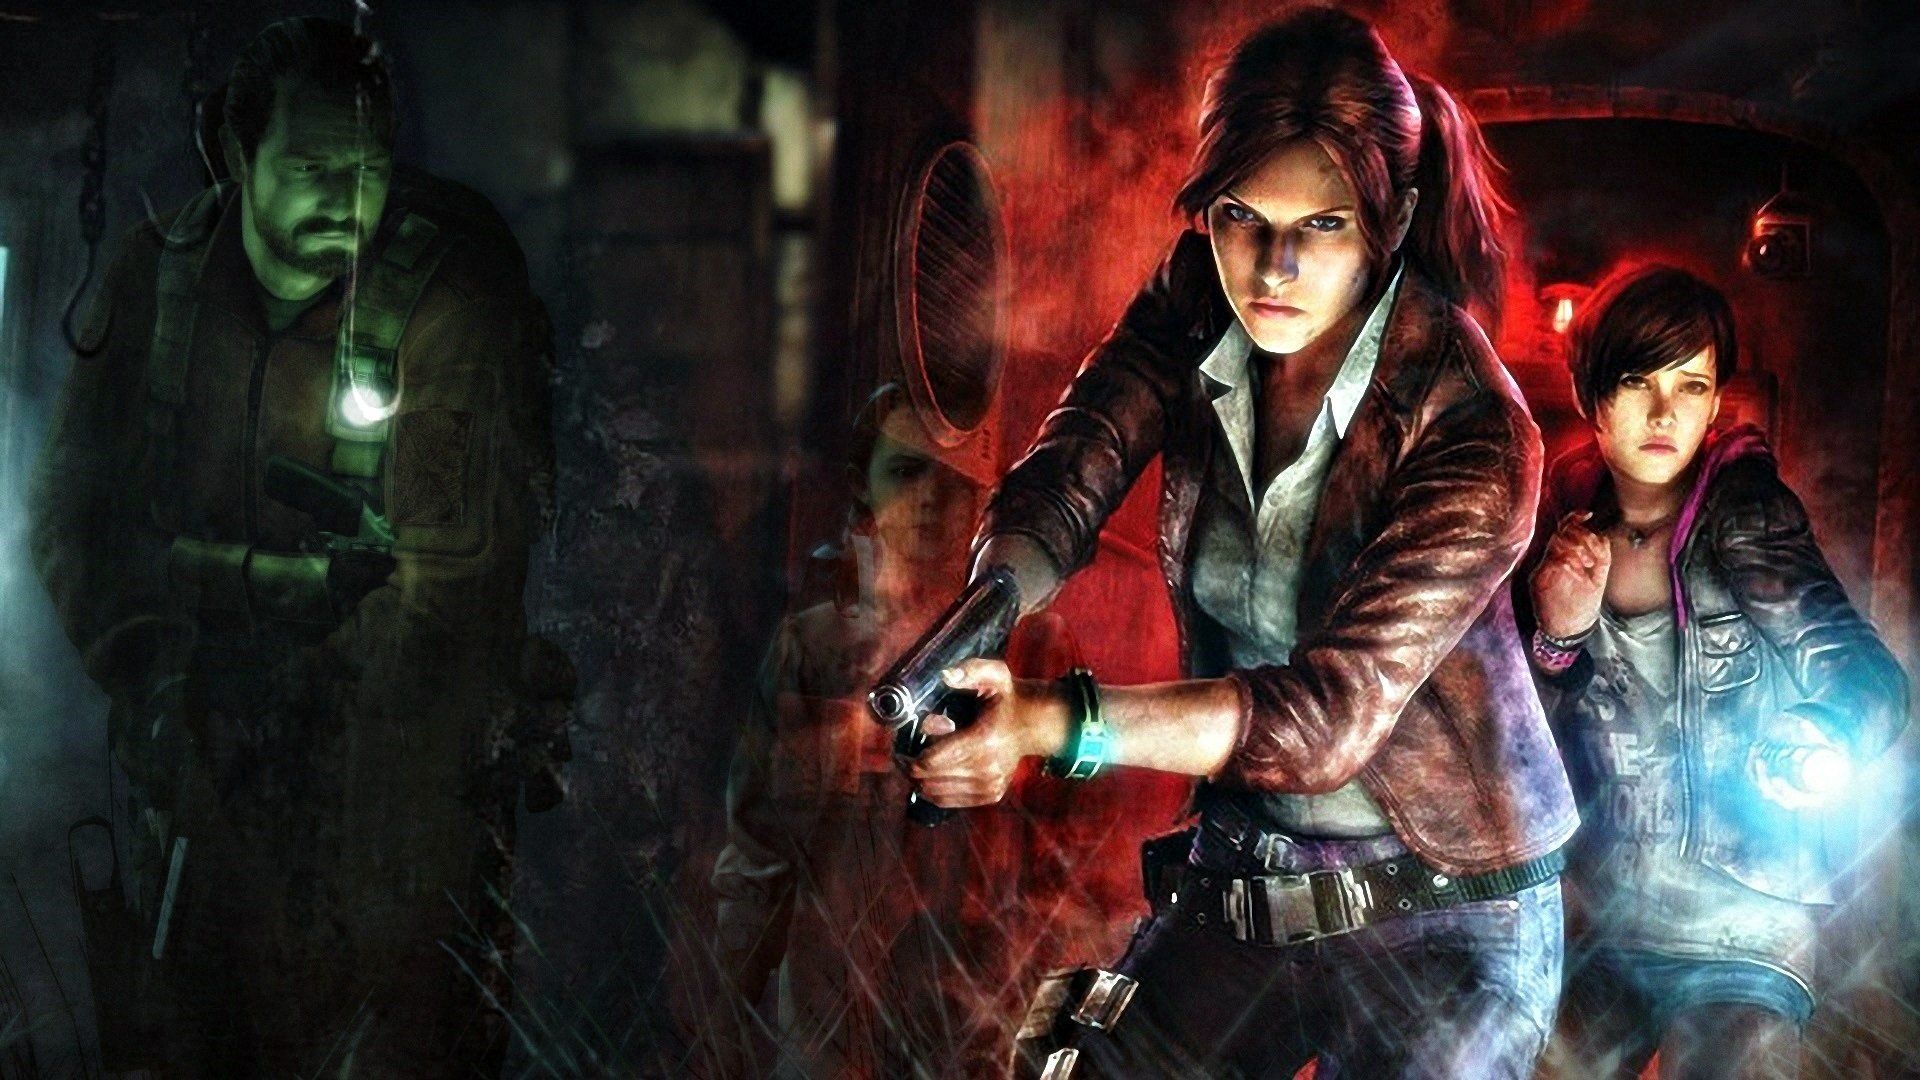 Free Download Resident Evil 2 Remake 4k Wallpaper Image